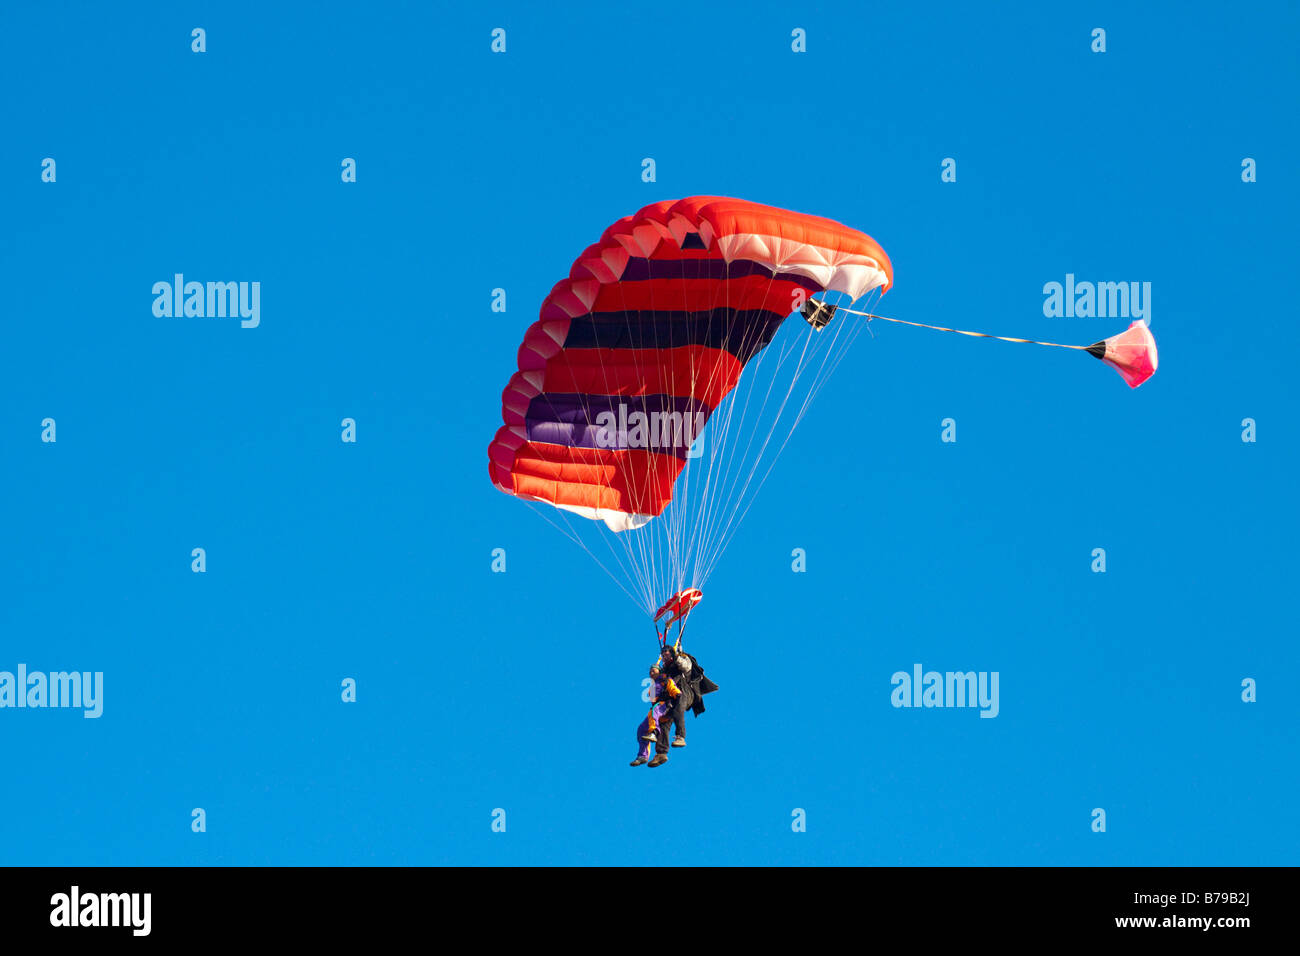 Parachutisme EN TANDEM EN ANGLETERRE Un parachute à rayures rouge transportant deux personnes GLISSE SUR LE CIEL BLEU Banque D'Images